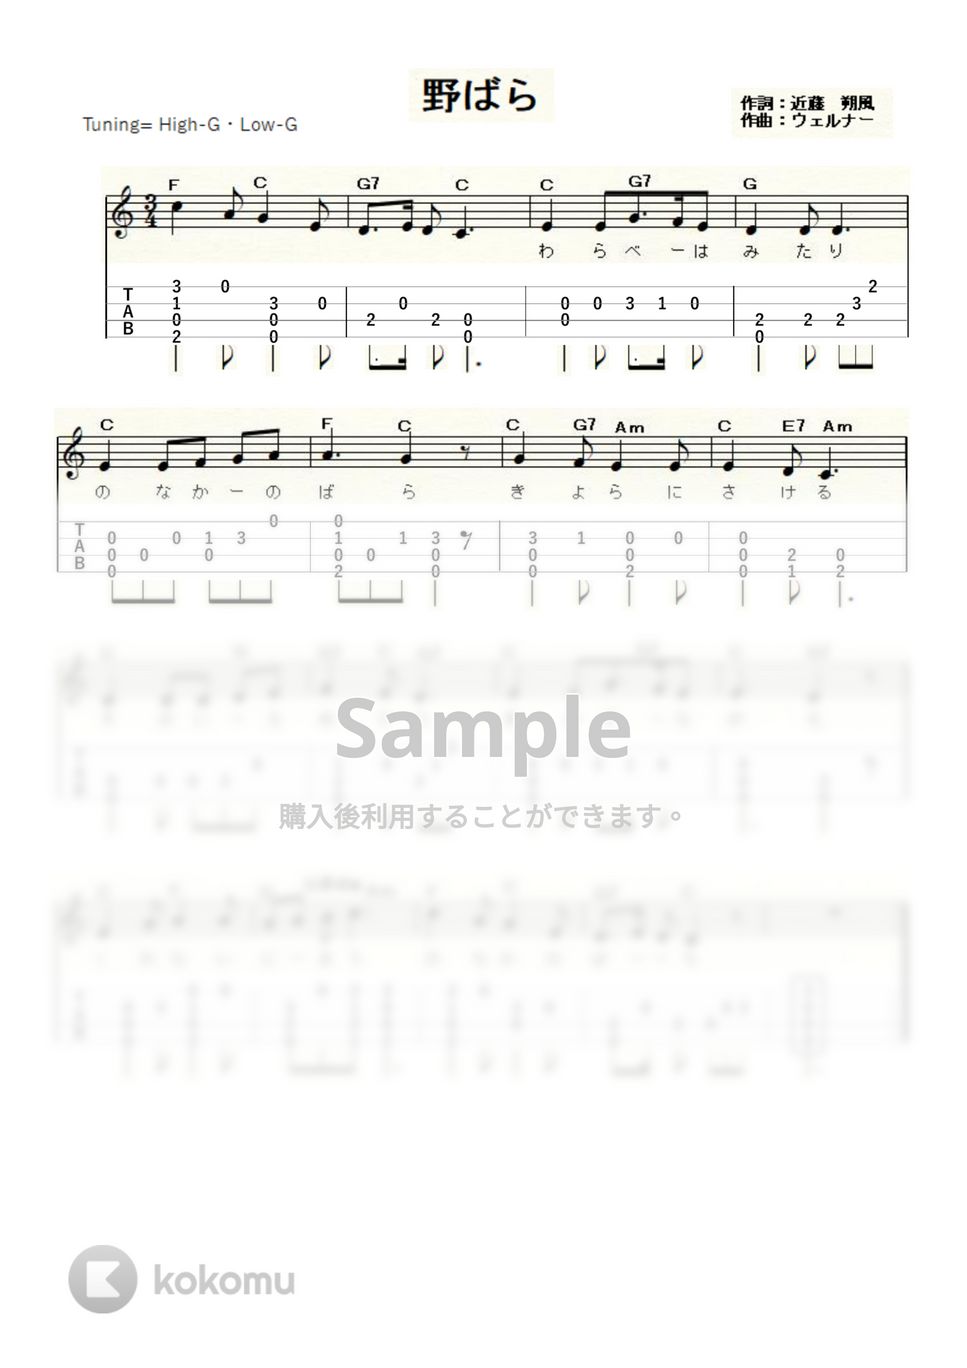 ウェルナー - 野ばら (ｳｸﾚﾚｿﾛ/High-G,Low-G/初級) by ukulelepapa